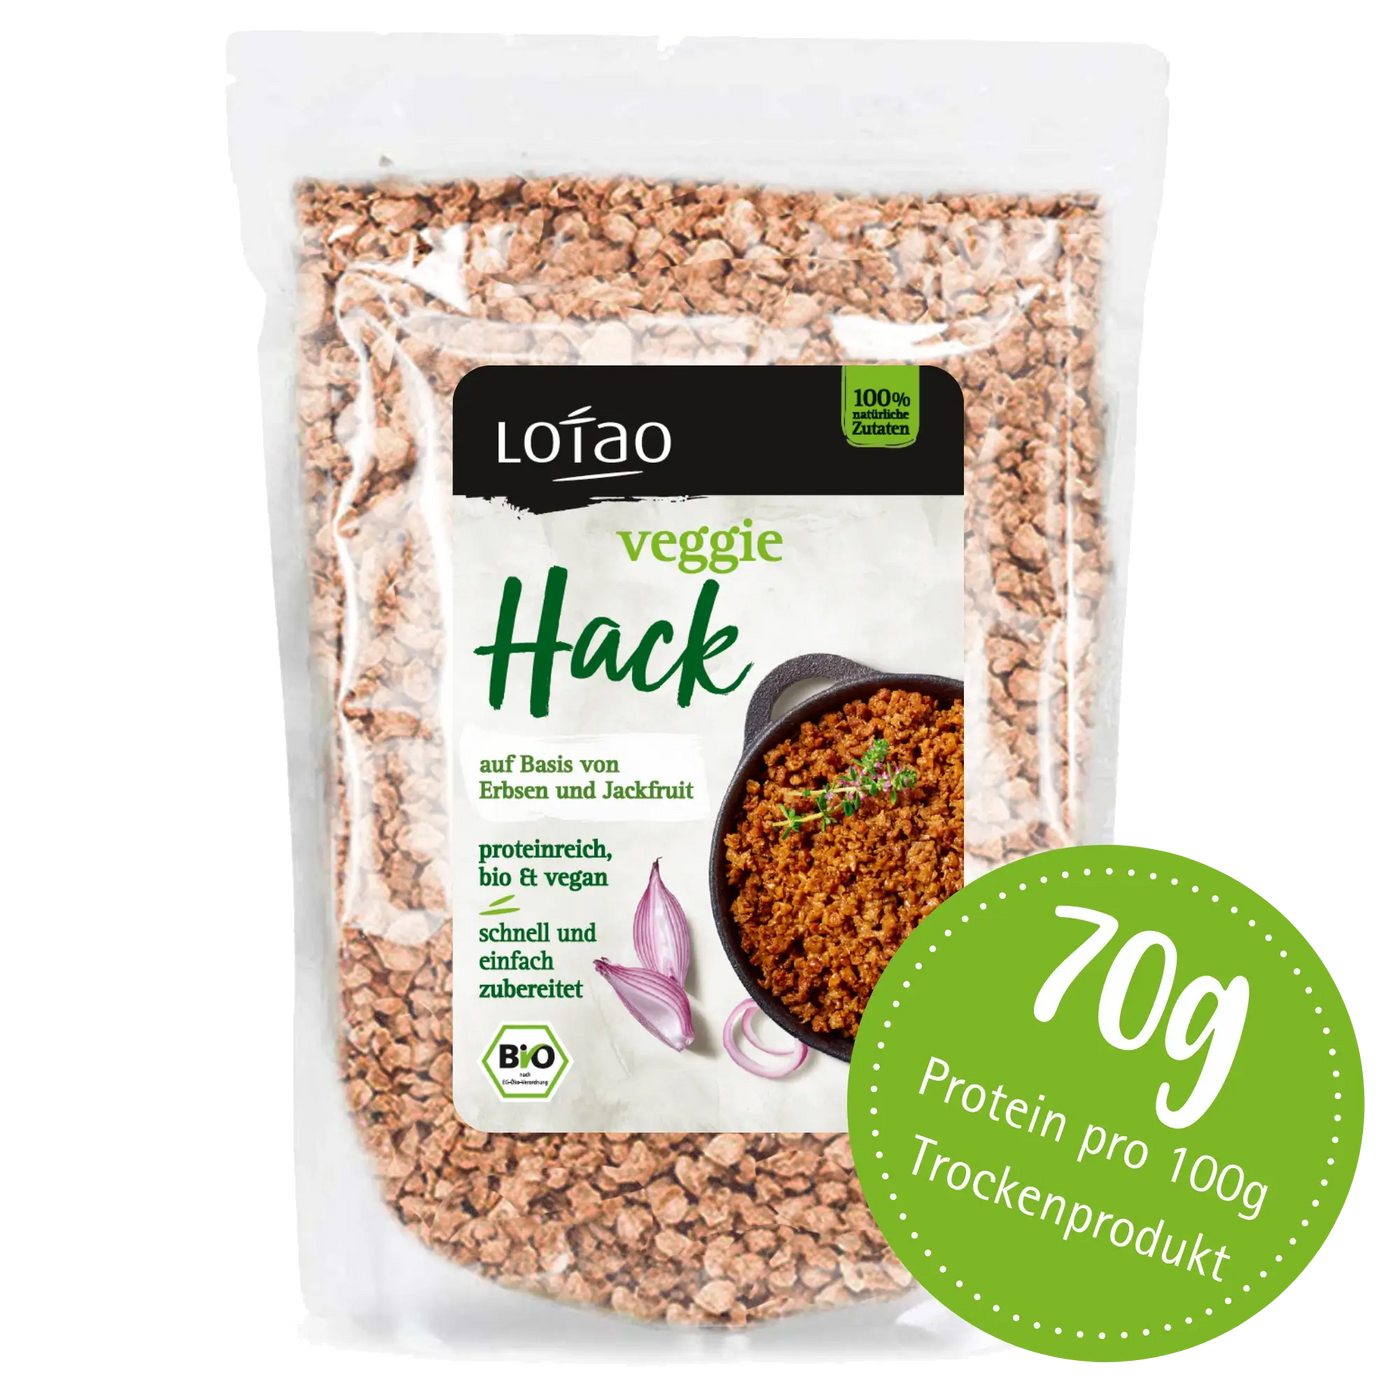 Bio-vegane Hackfleischalternative Veggie Hack von Lotao mit 70% Proteinanteil in der 1kg Packung